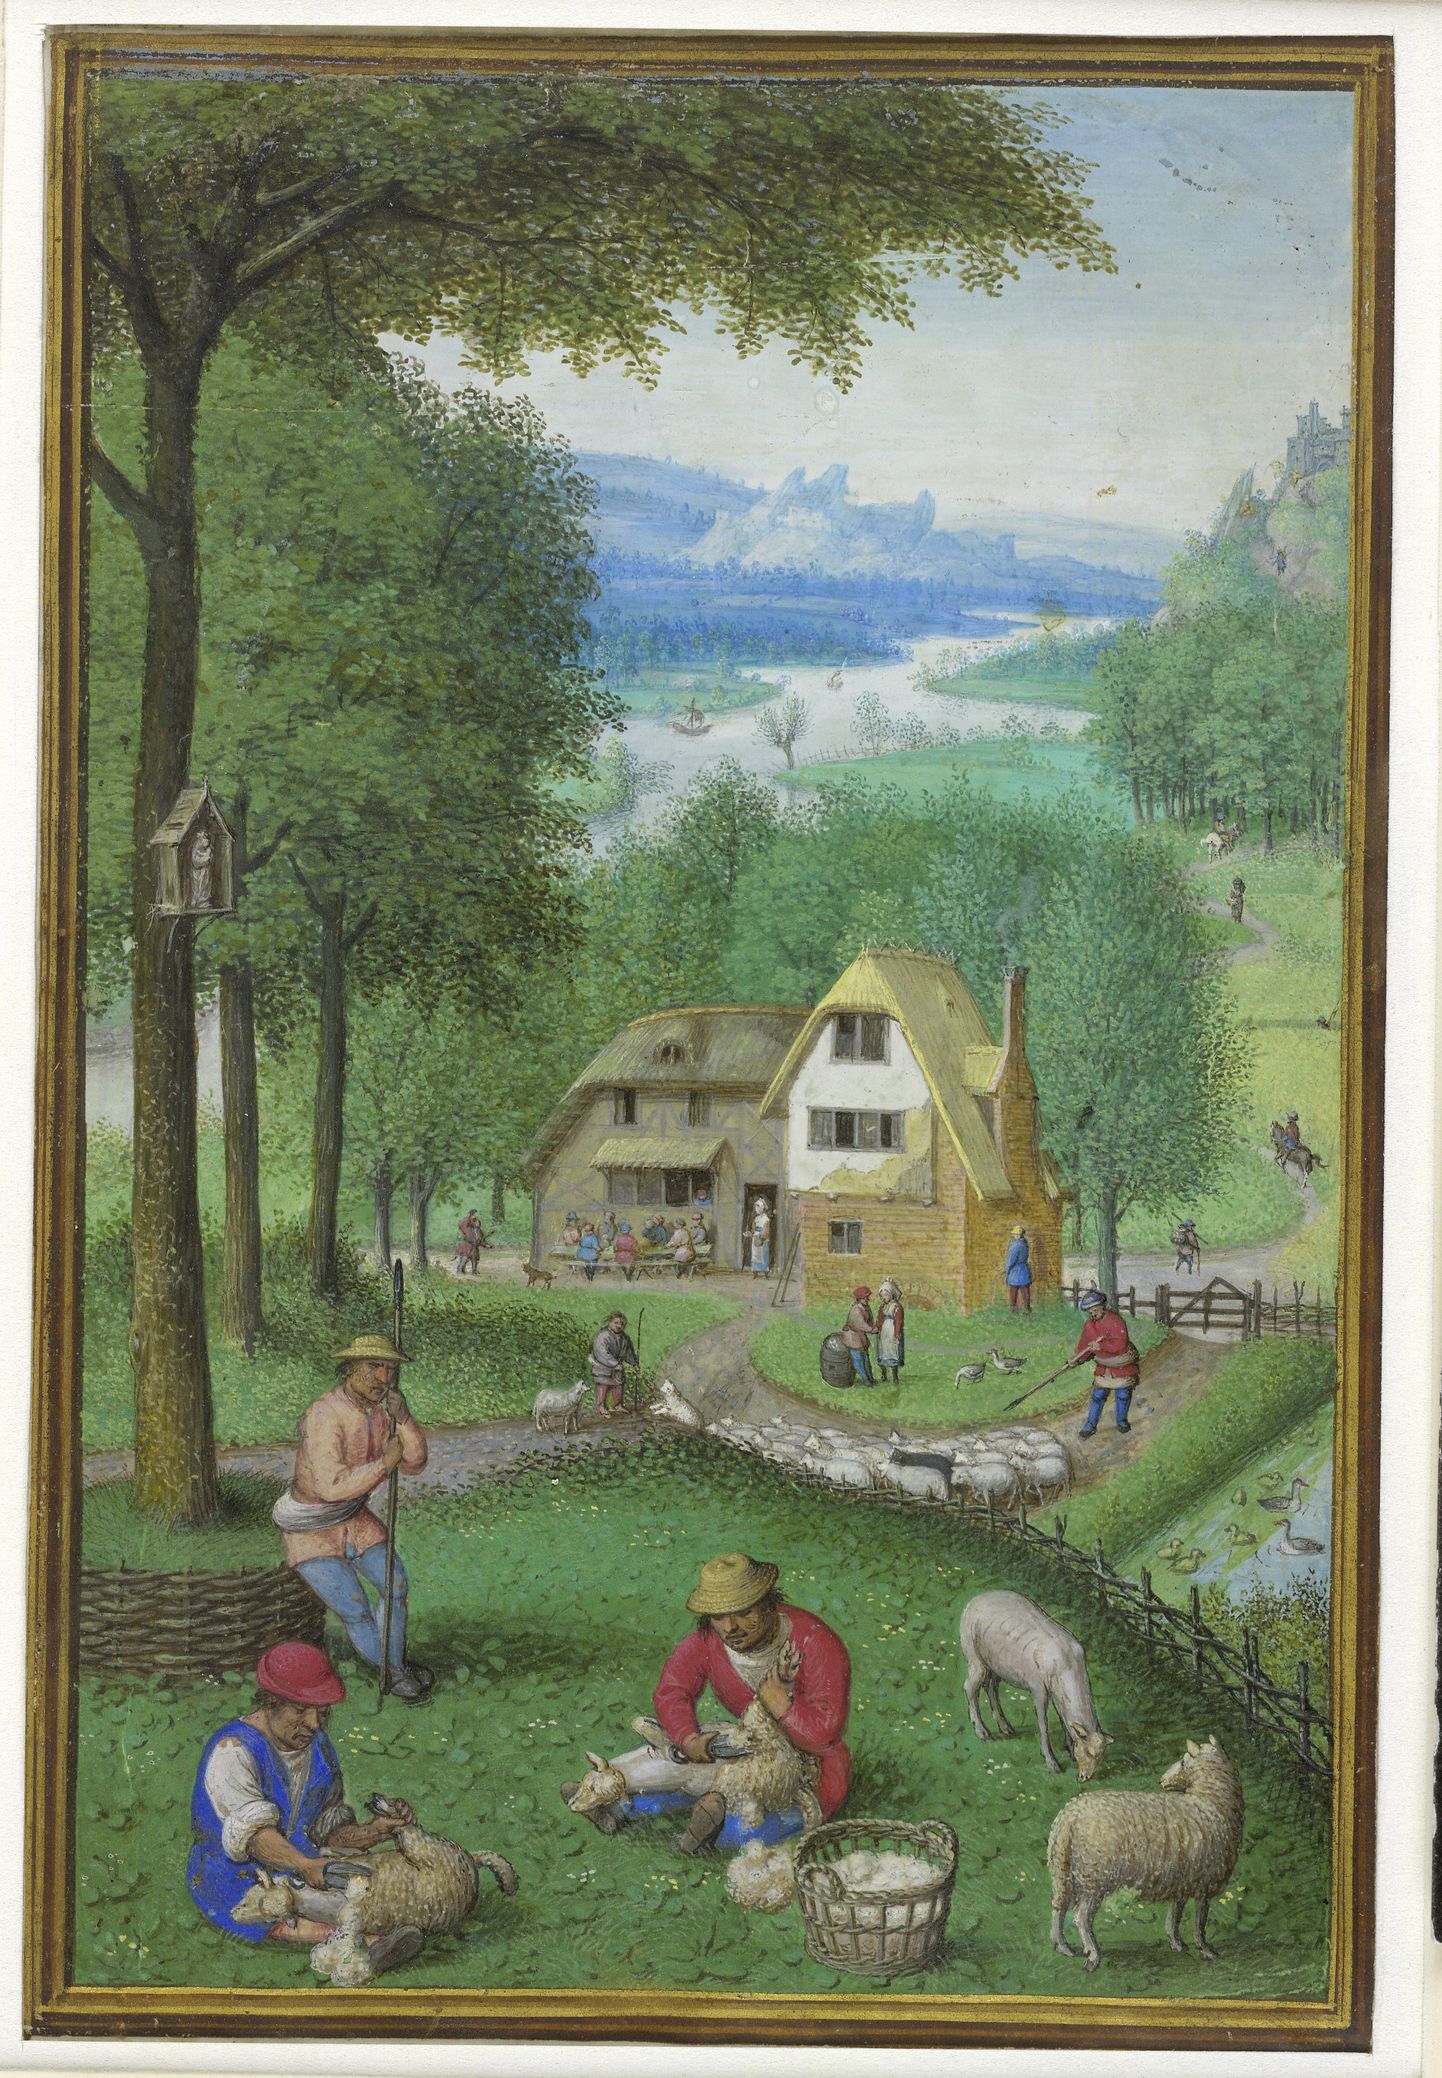 Simon Beningi (1483-1561) kalendripilt aastast 1540. Pilt on illustreeriv.